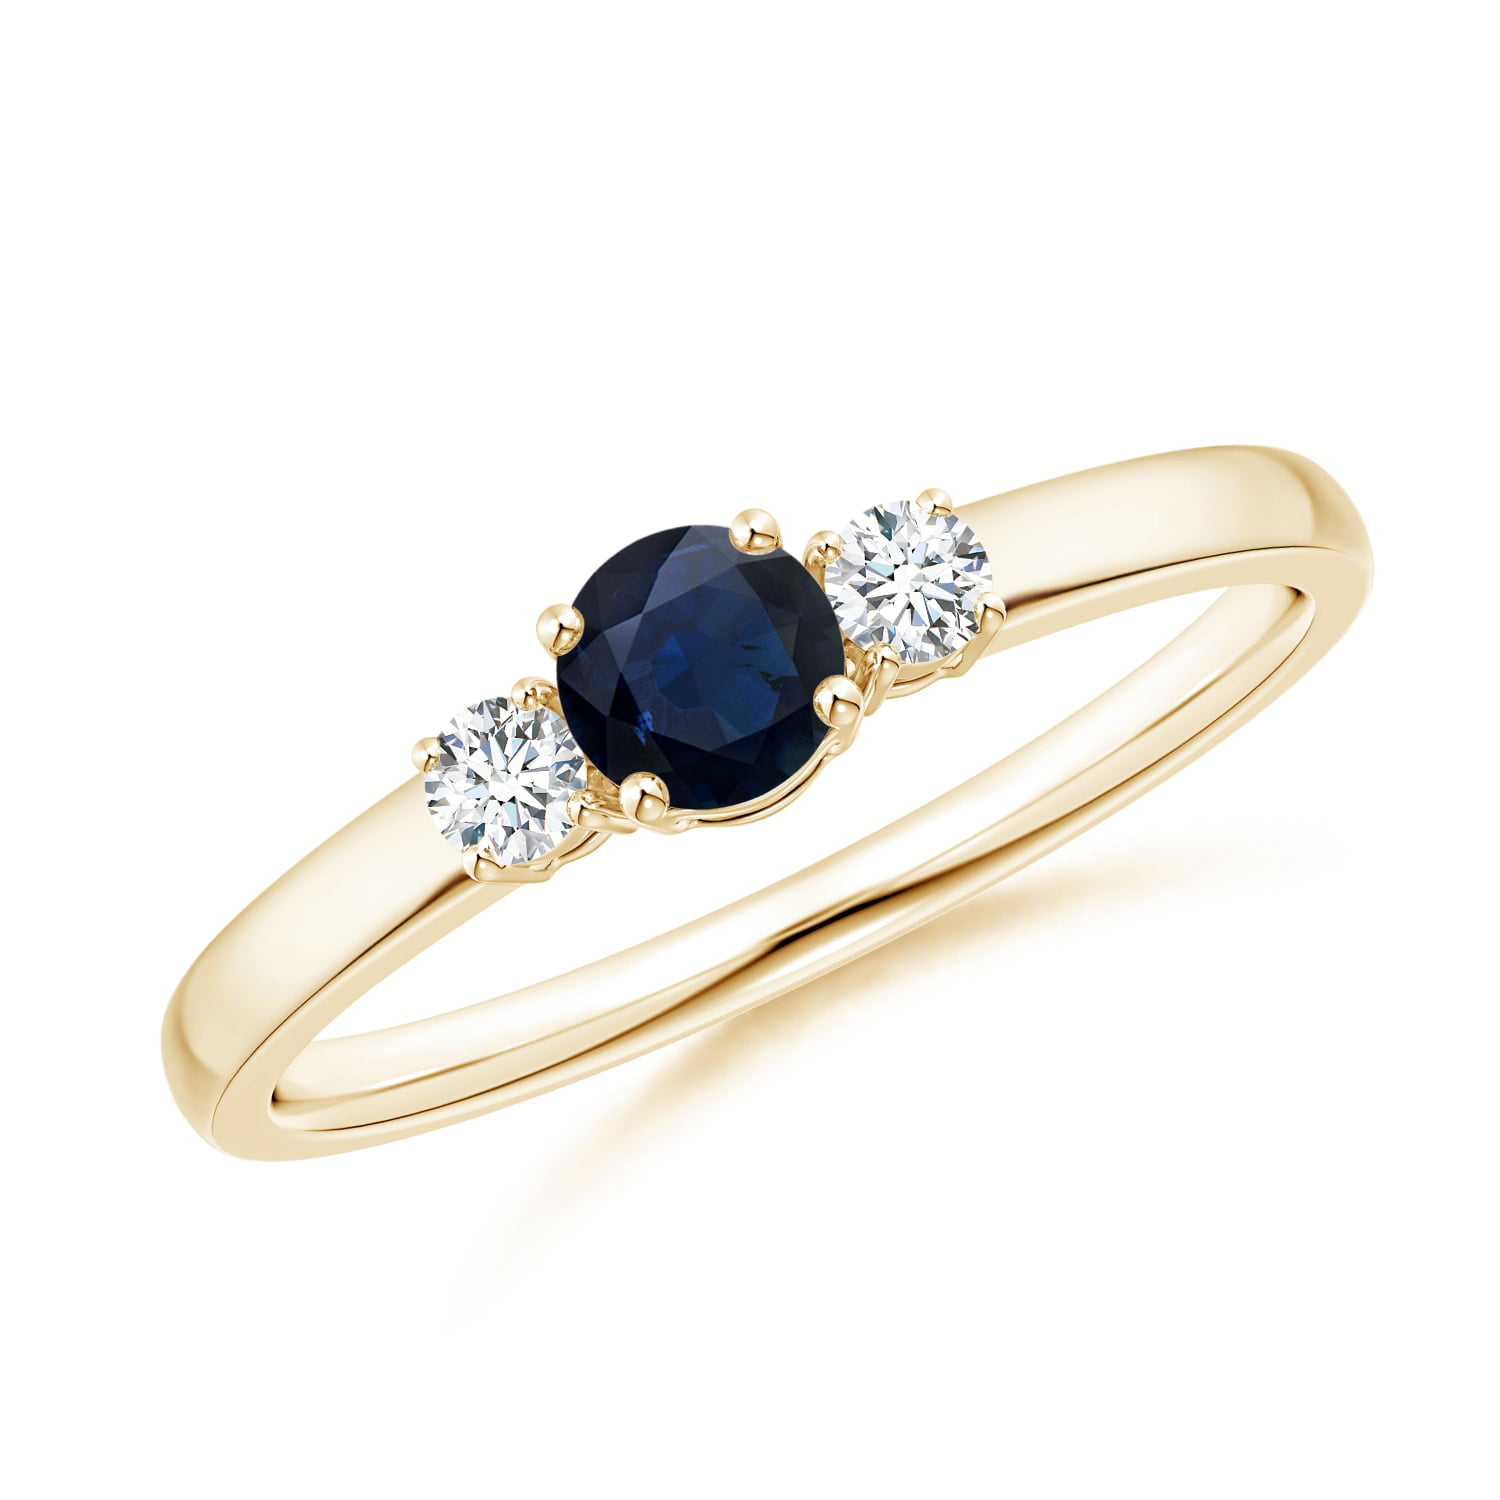 Natural Blue Sapphire 14K Solid Gold Moissanite Diamond RingEngagement Ring For WomenSeptember Birthstone RingGift For Her